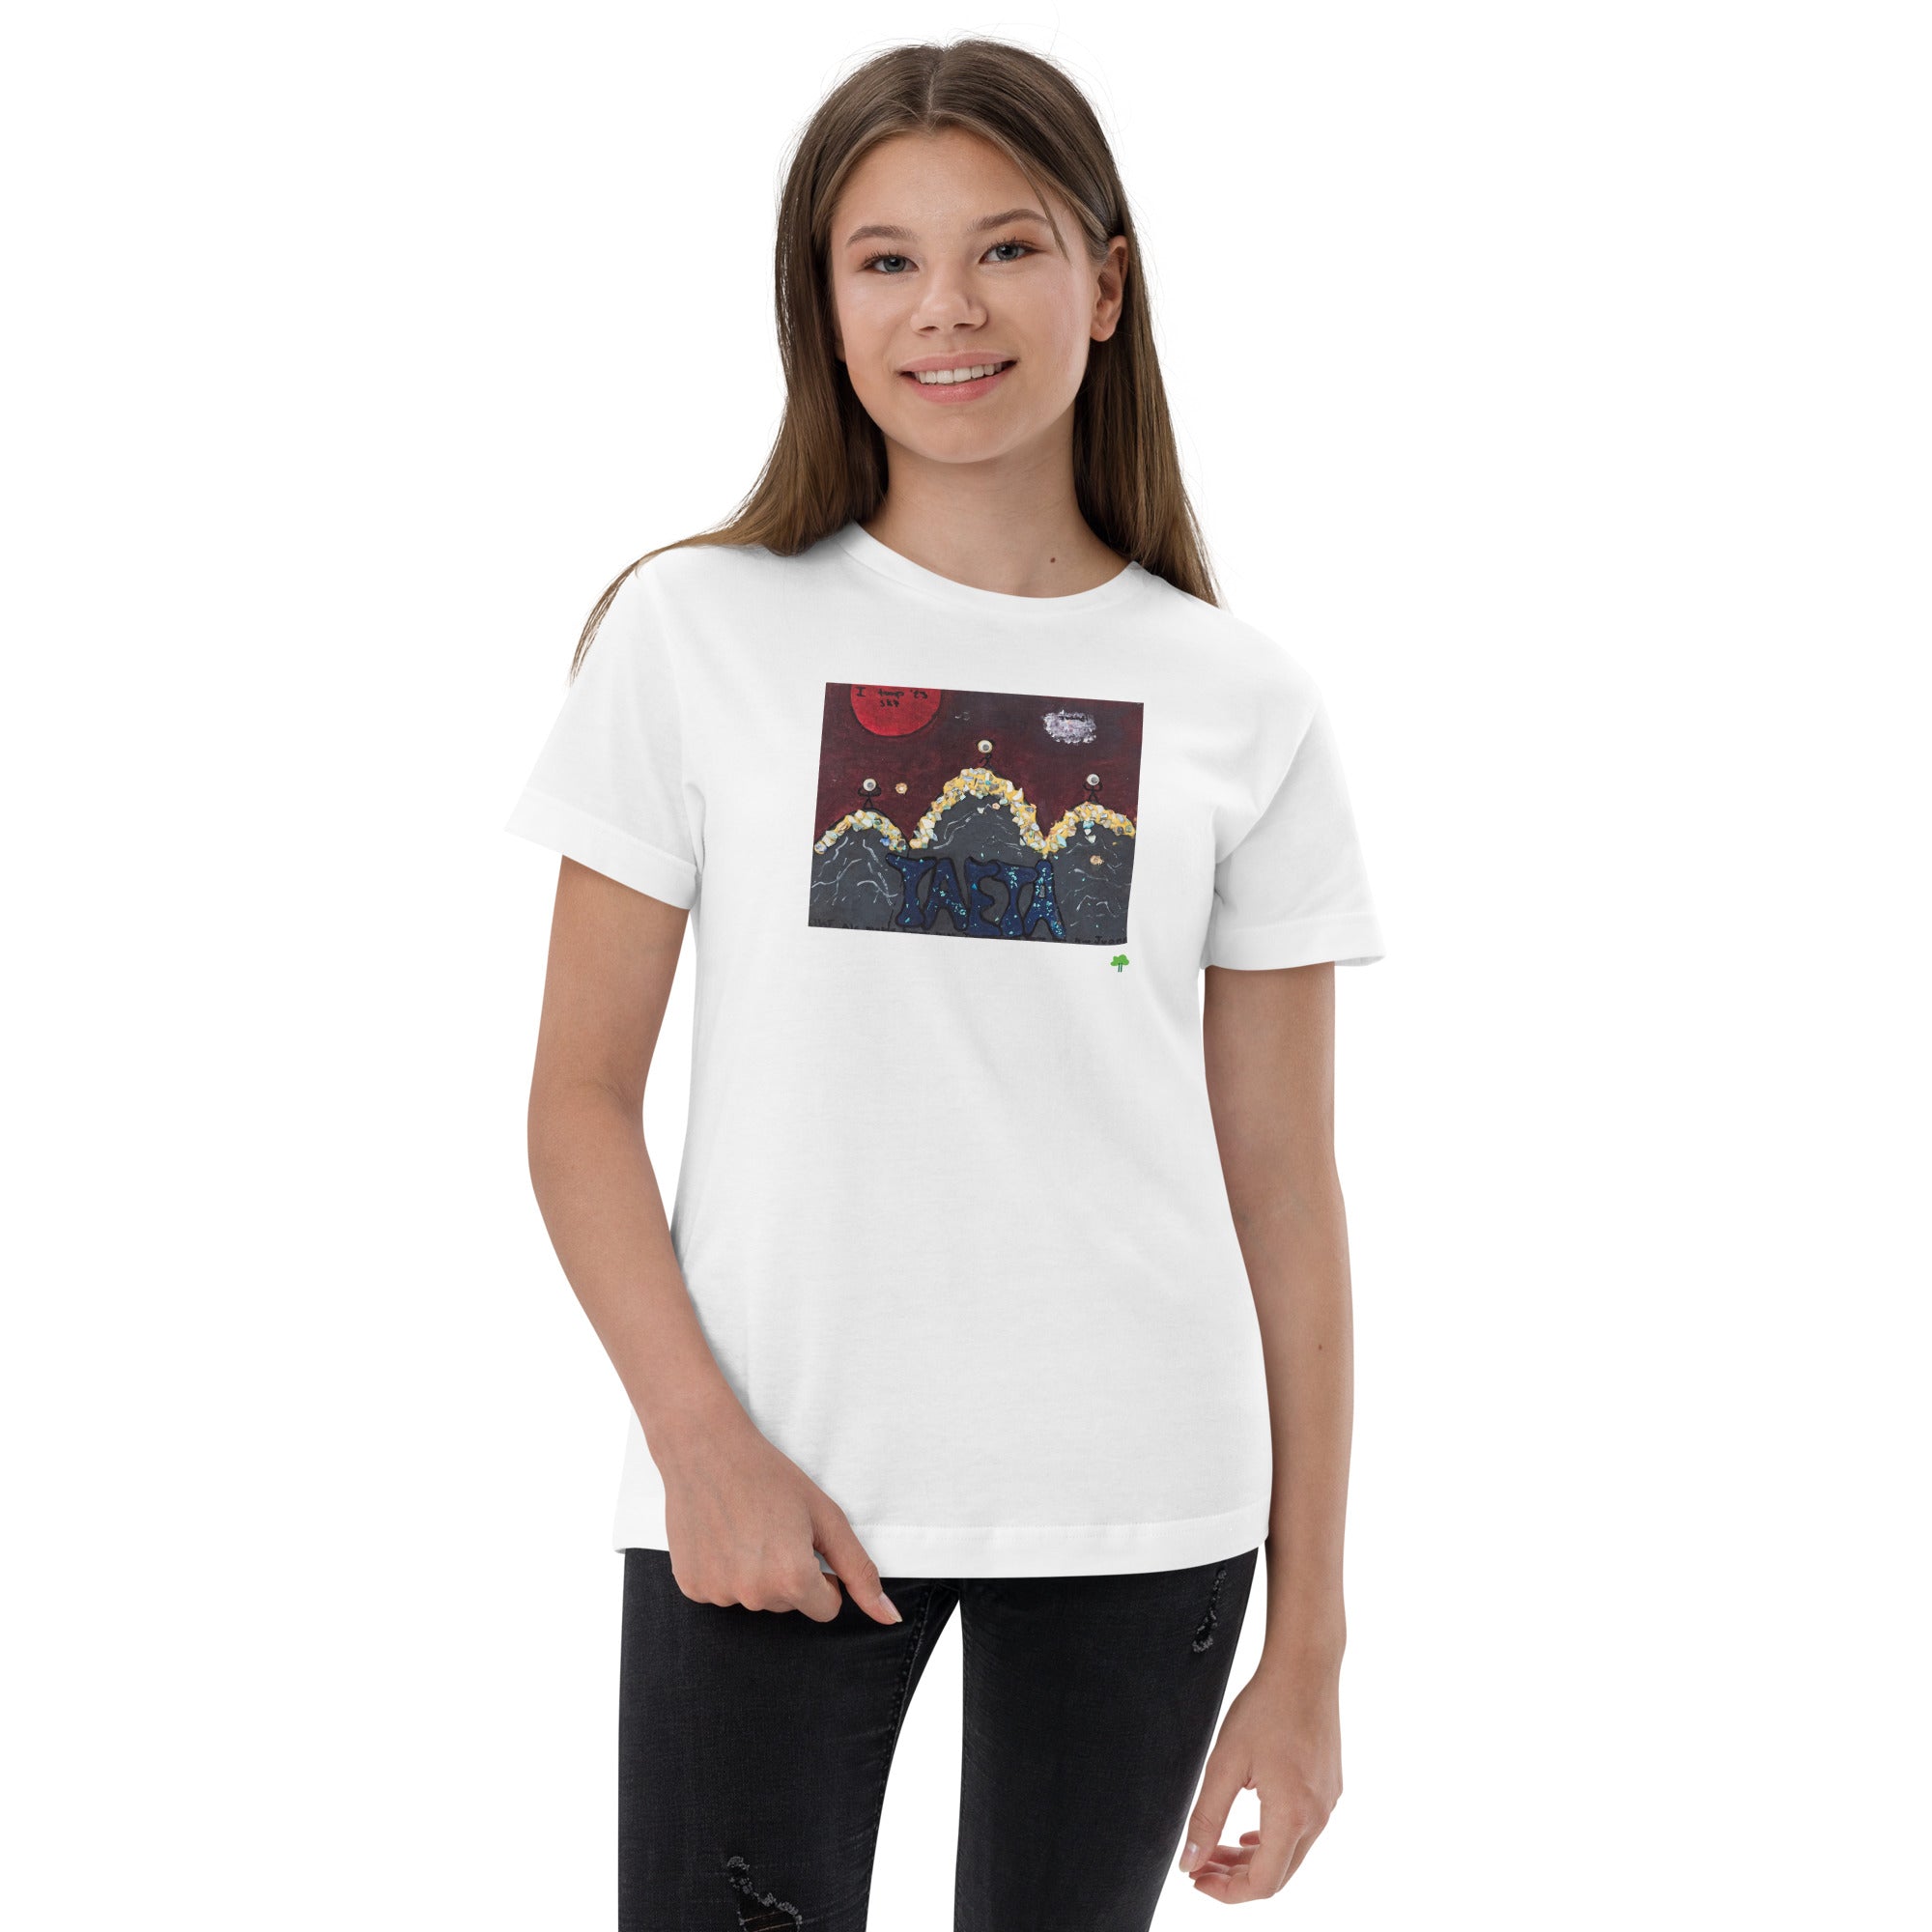 I Temp - Sabana - K7 | Youth jersey t-shirt